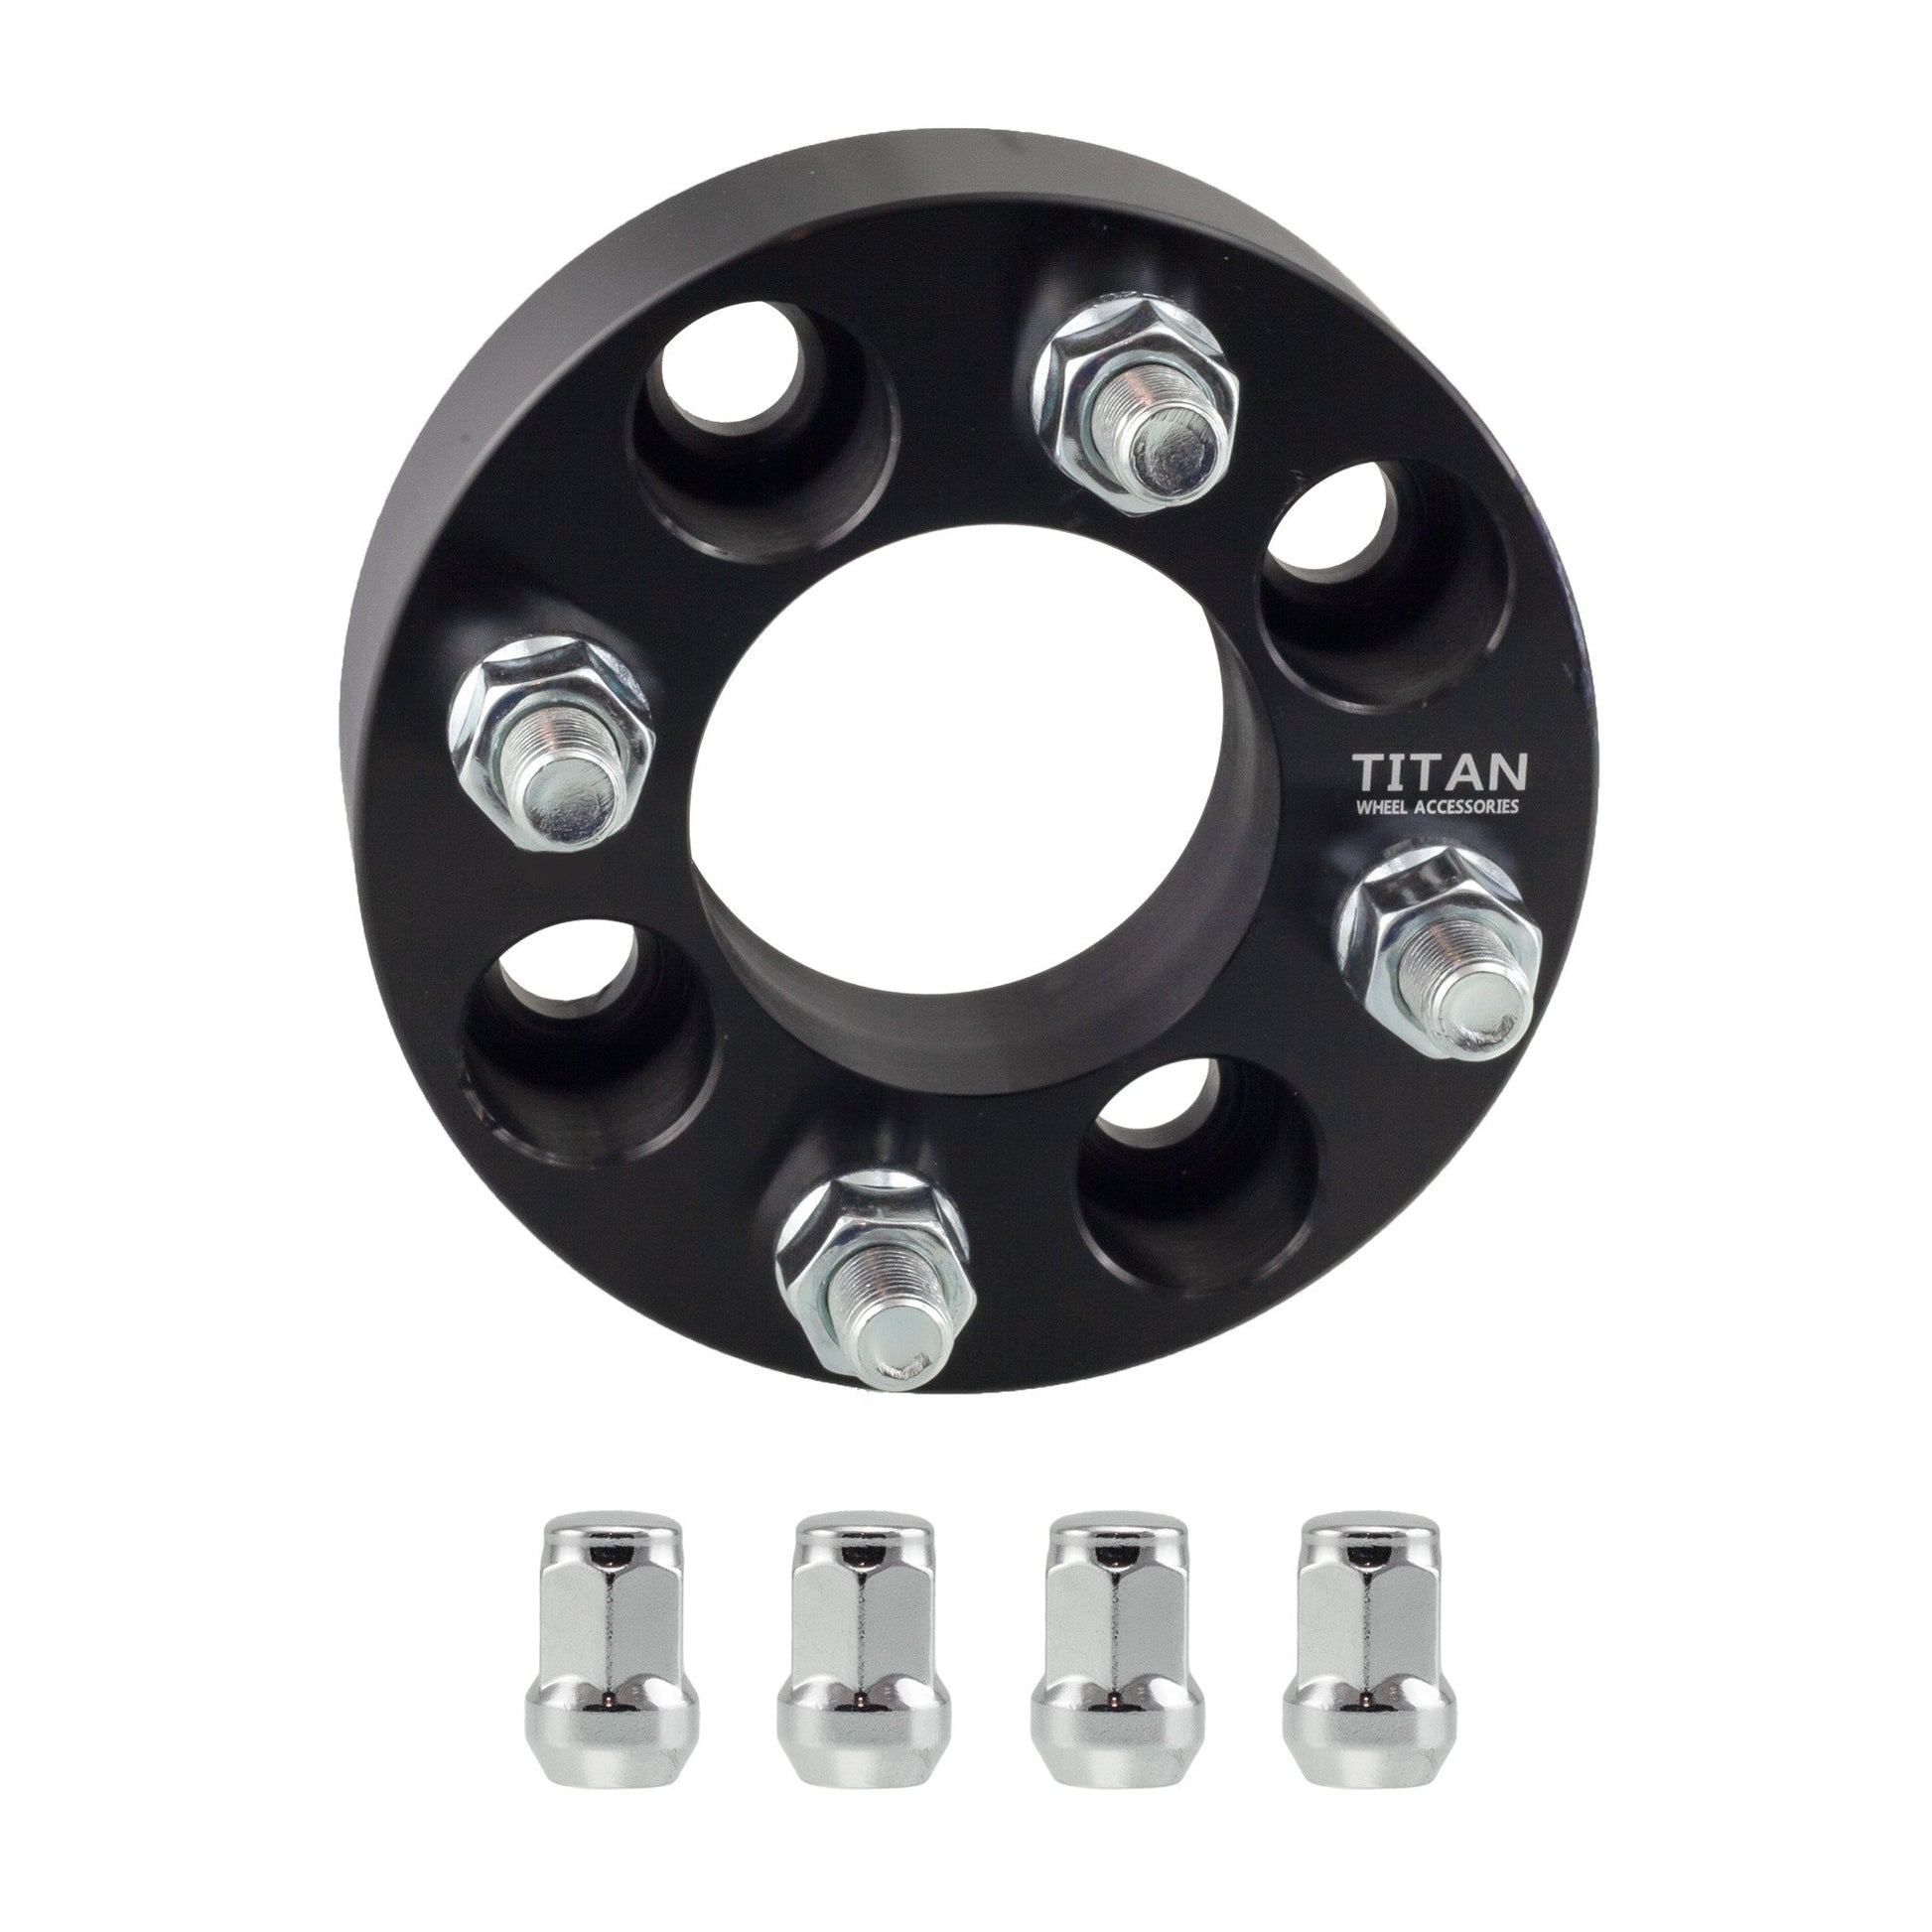 25mm (1") Titan 4x108 to 4x100 Wheel Adapters | 12x1.5 Studs | Titan Wheel Accessories